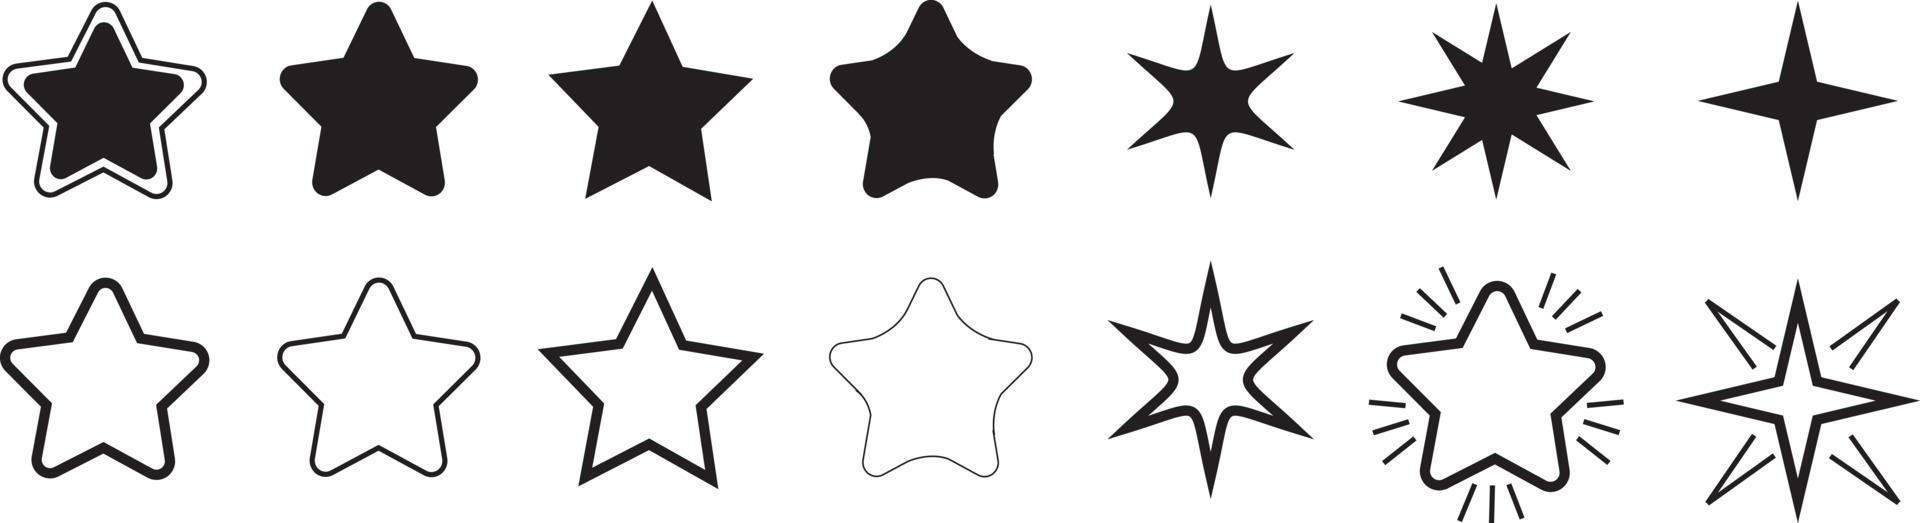 collezione di icone stella. diverse stelle impostate. vettore